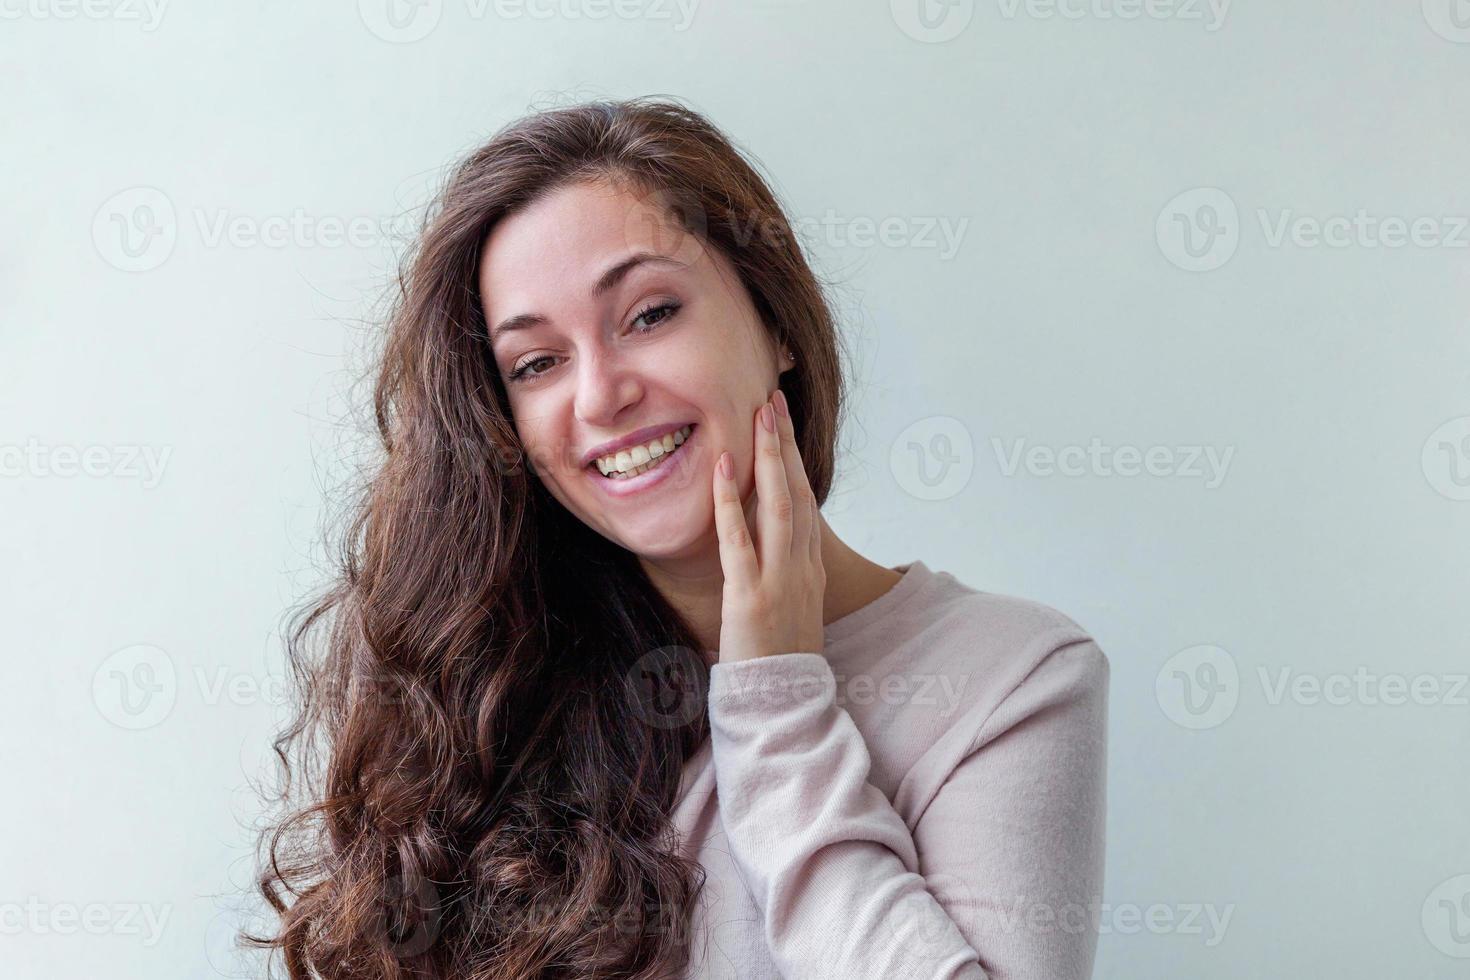 niña feliz sonriendo. retrato de belleza joven feliz mujer morena risa positiva sobre fondo blanco aislado. mujer europea. emoción humana positiva expresión facial lenguaje corporal. foto